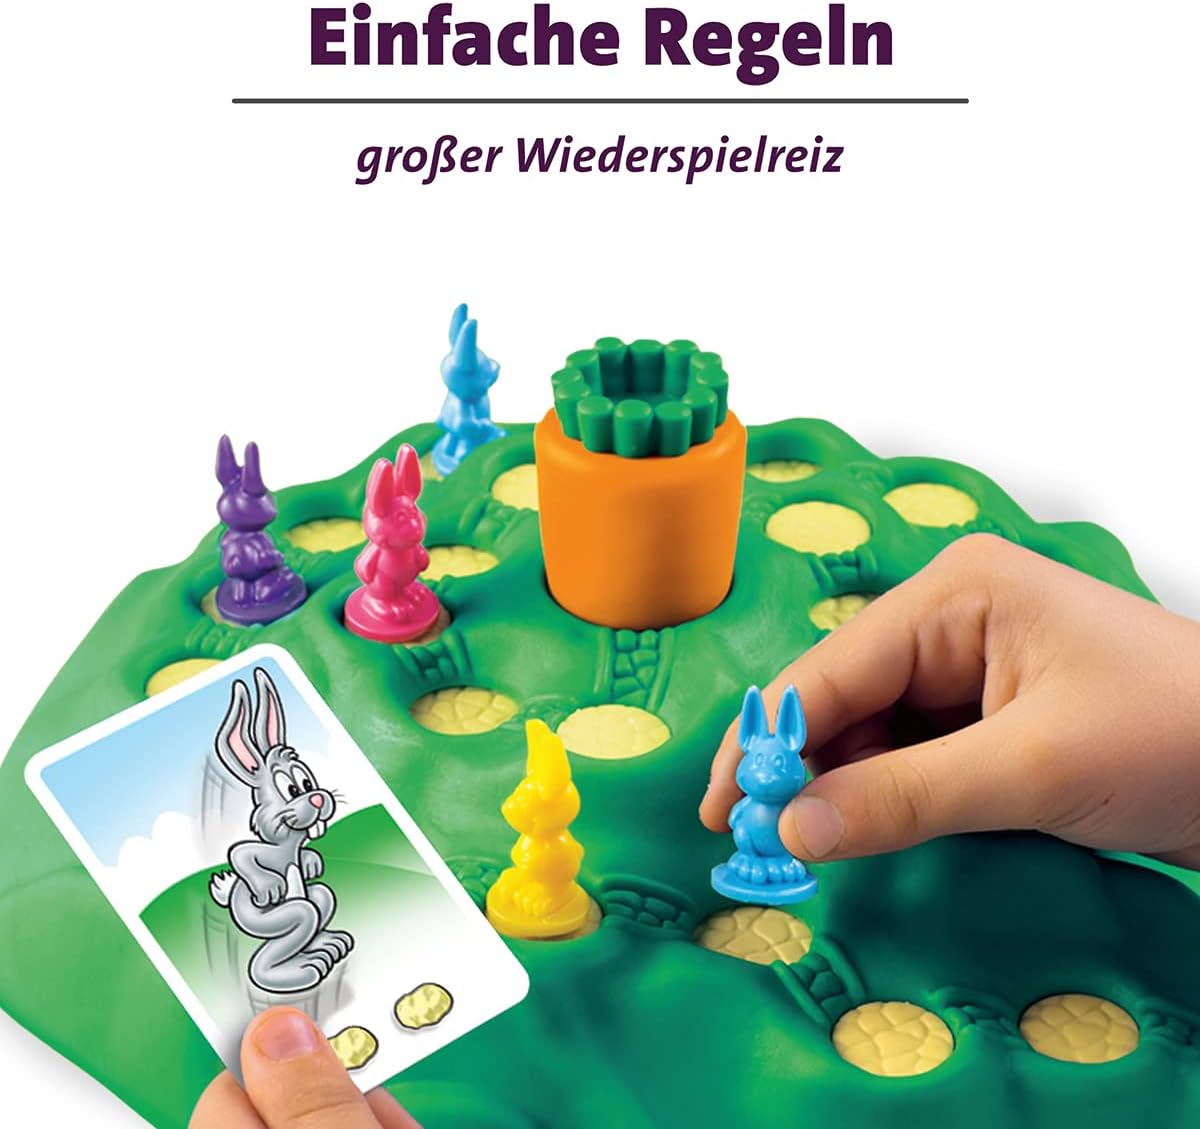 Ravensburger 21556 - Lotti Karotti, Brettspiel für Kinder ab 4 Jahren, Familienspiel für Kinder und Erwachsene, Klassiker für 2-4 Spieler